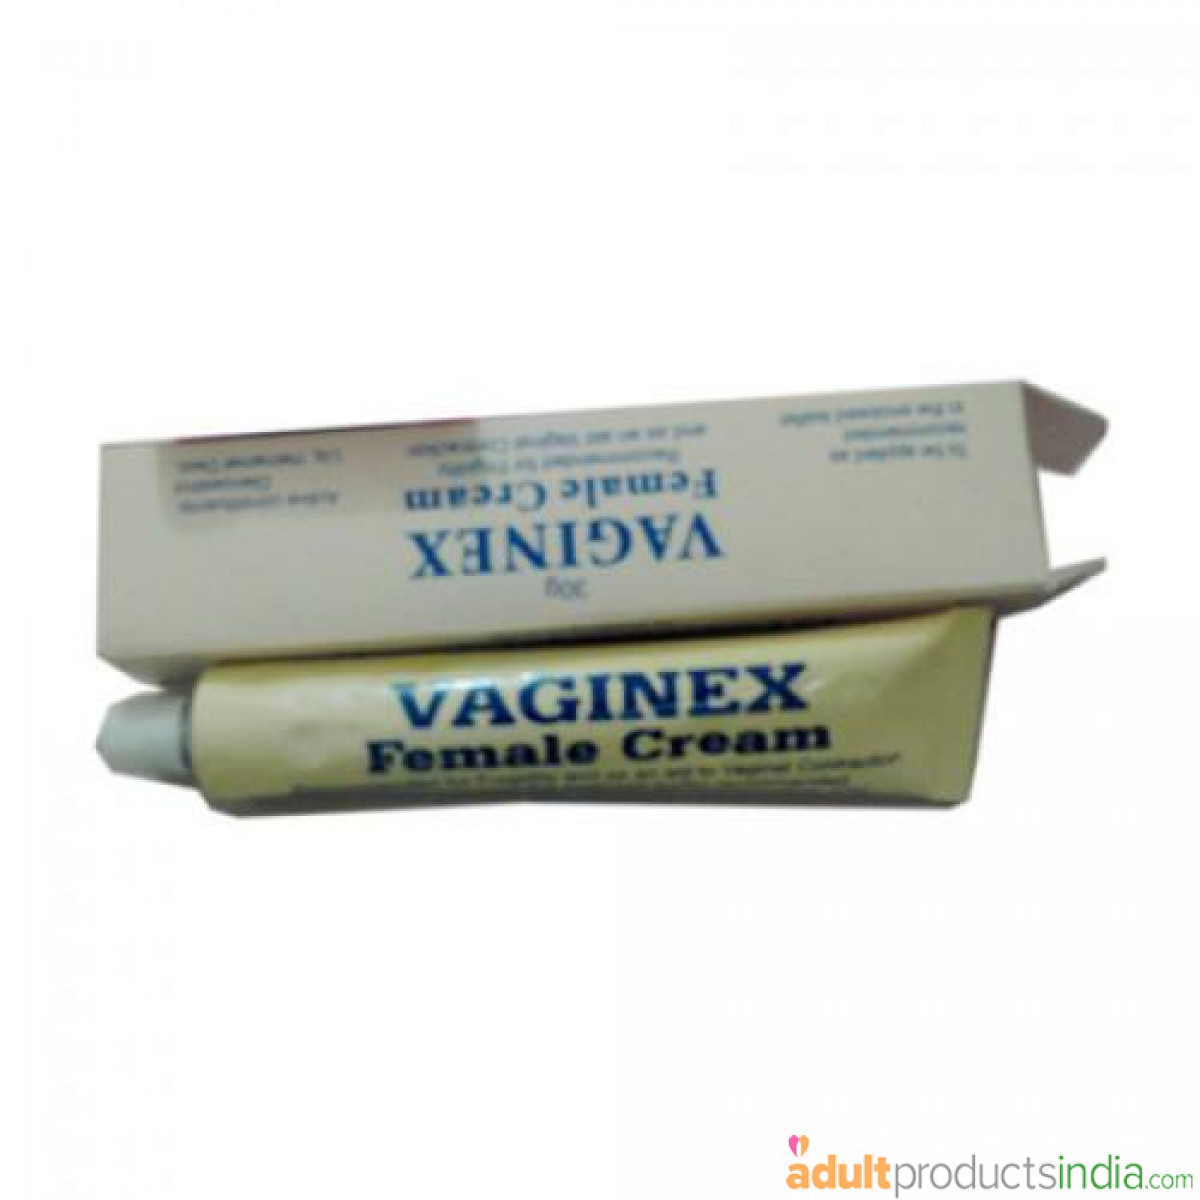 Vaginex Tightening Cream